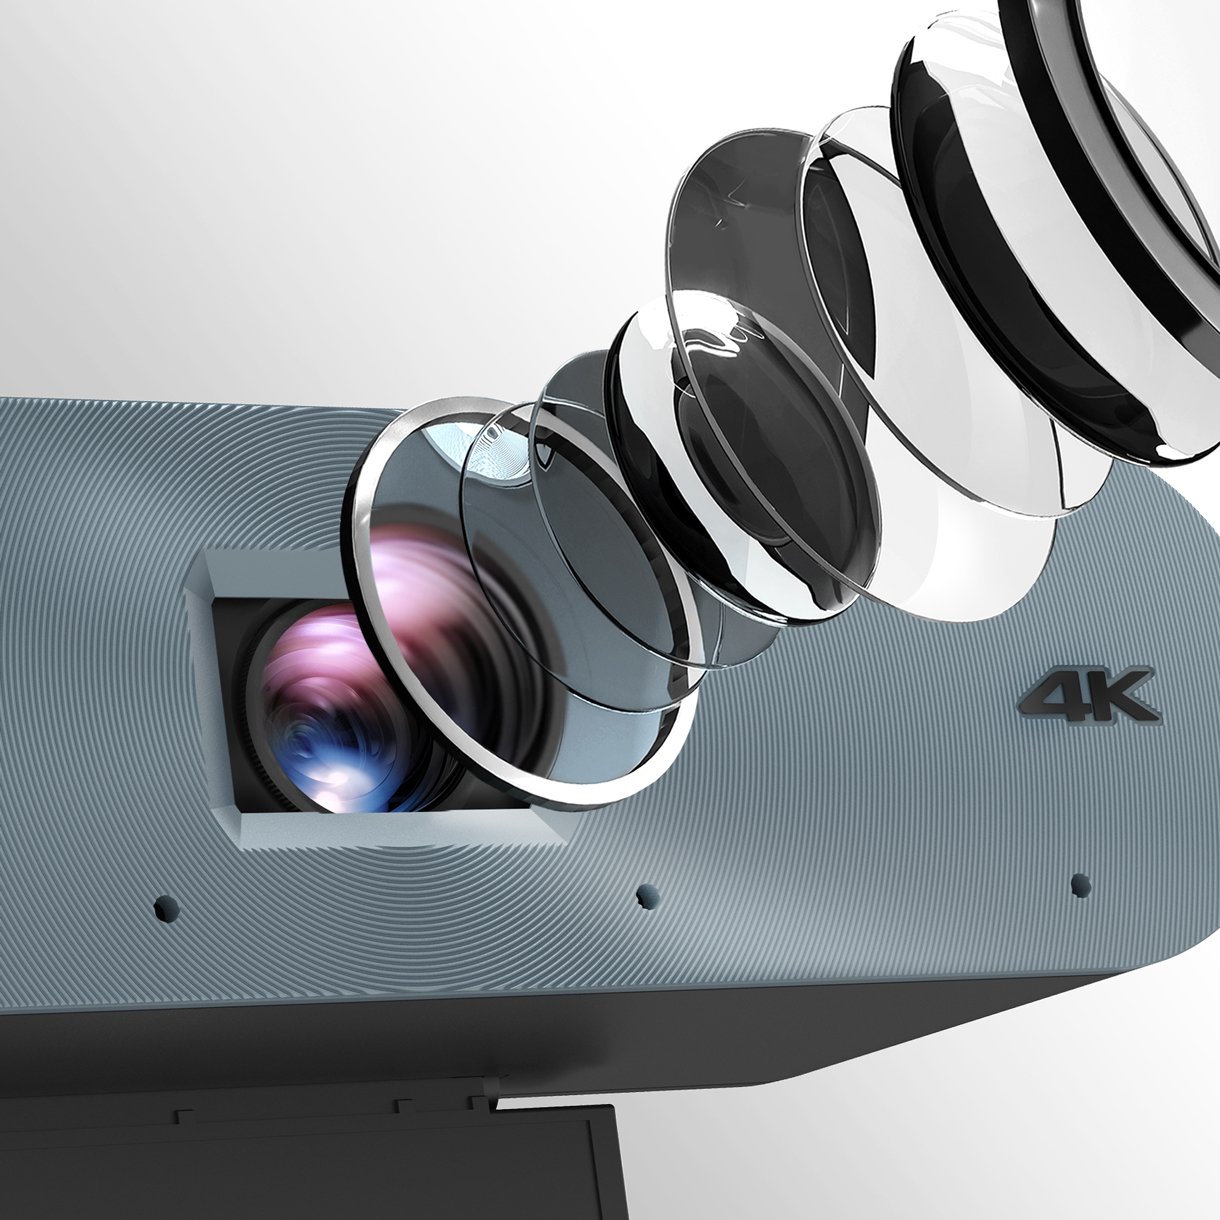 Kamera DV01K je vybavena vysoce výkonným obrazovým snímačem Sony, který zvyšuje kvalitu obrazu a umožňuje pořizovat videa v čistotě 4K UHD.